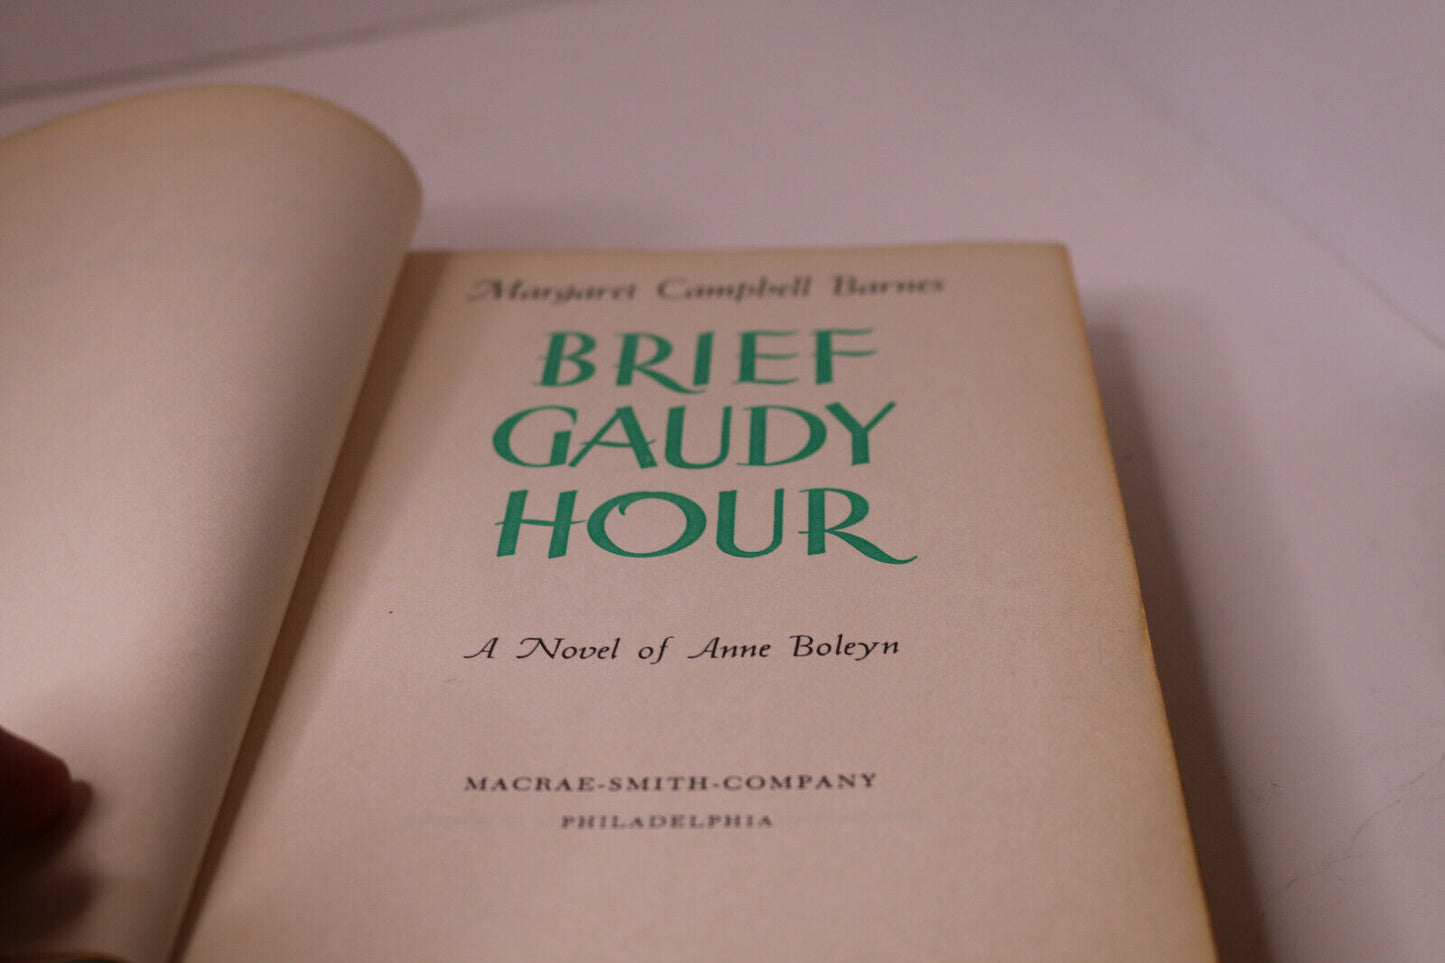 Brief Gaudy Hour A Novel Of Anne Boleyn By Margaret C Barnes Hcdj 1949